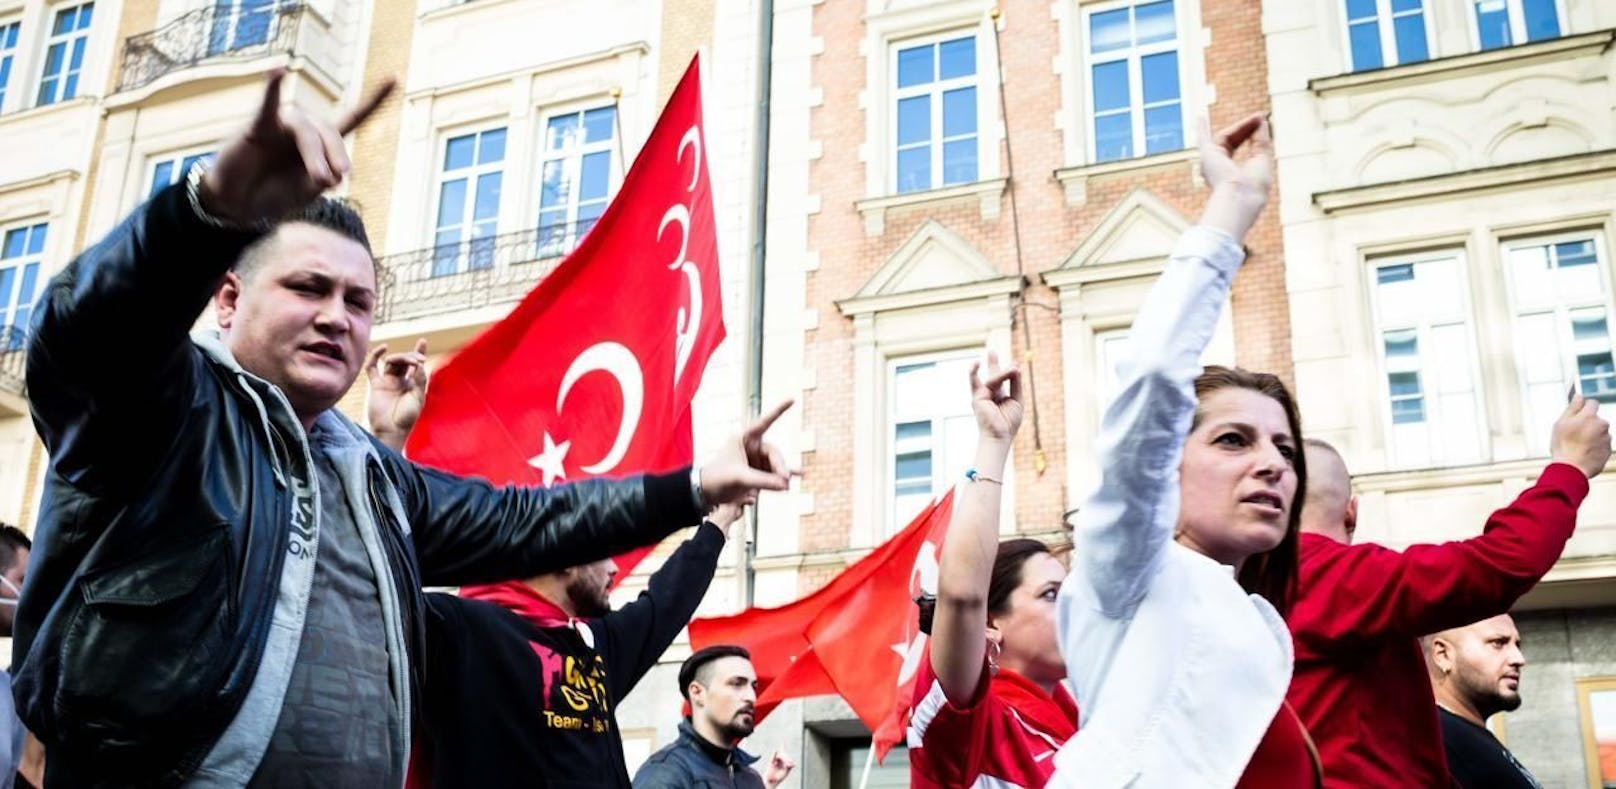 Aufmarsch von türkischen Nationalisten mit dem Wolfsgruß in München 2014.